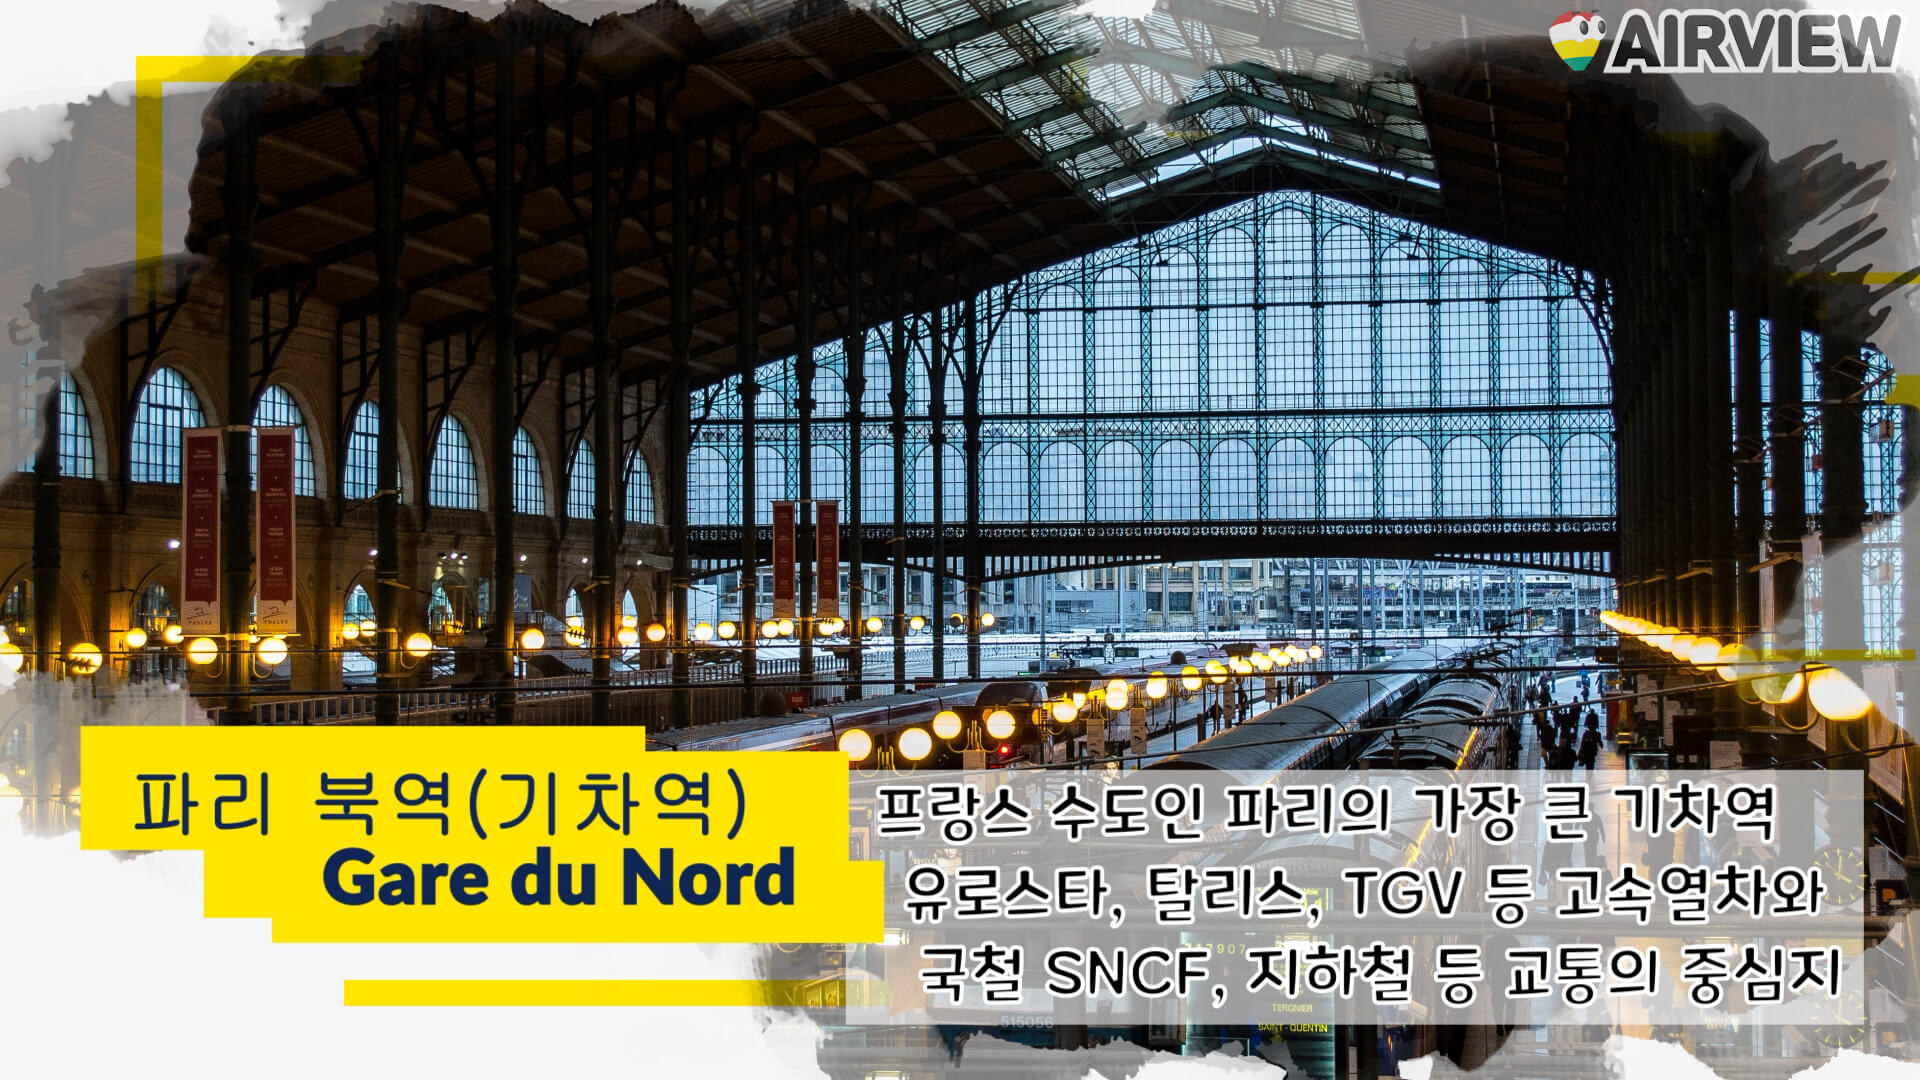 파리에서 가장 큰 기차역인 북역에 대한 풍경과 간략한 소개